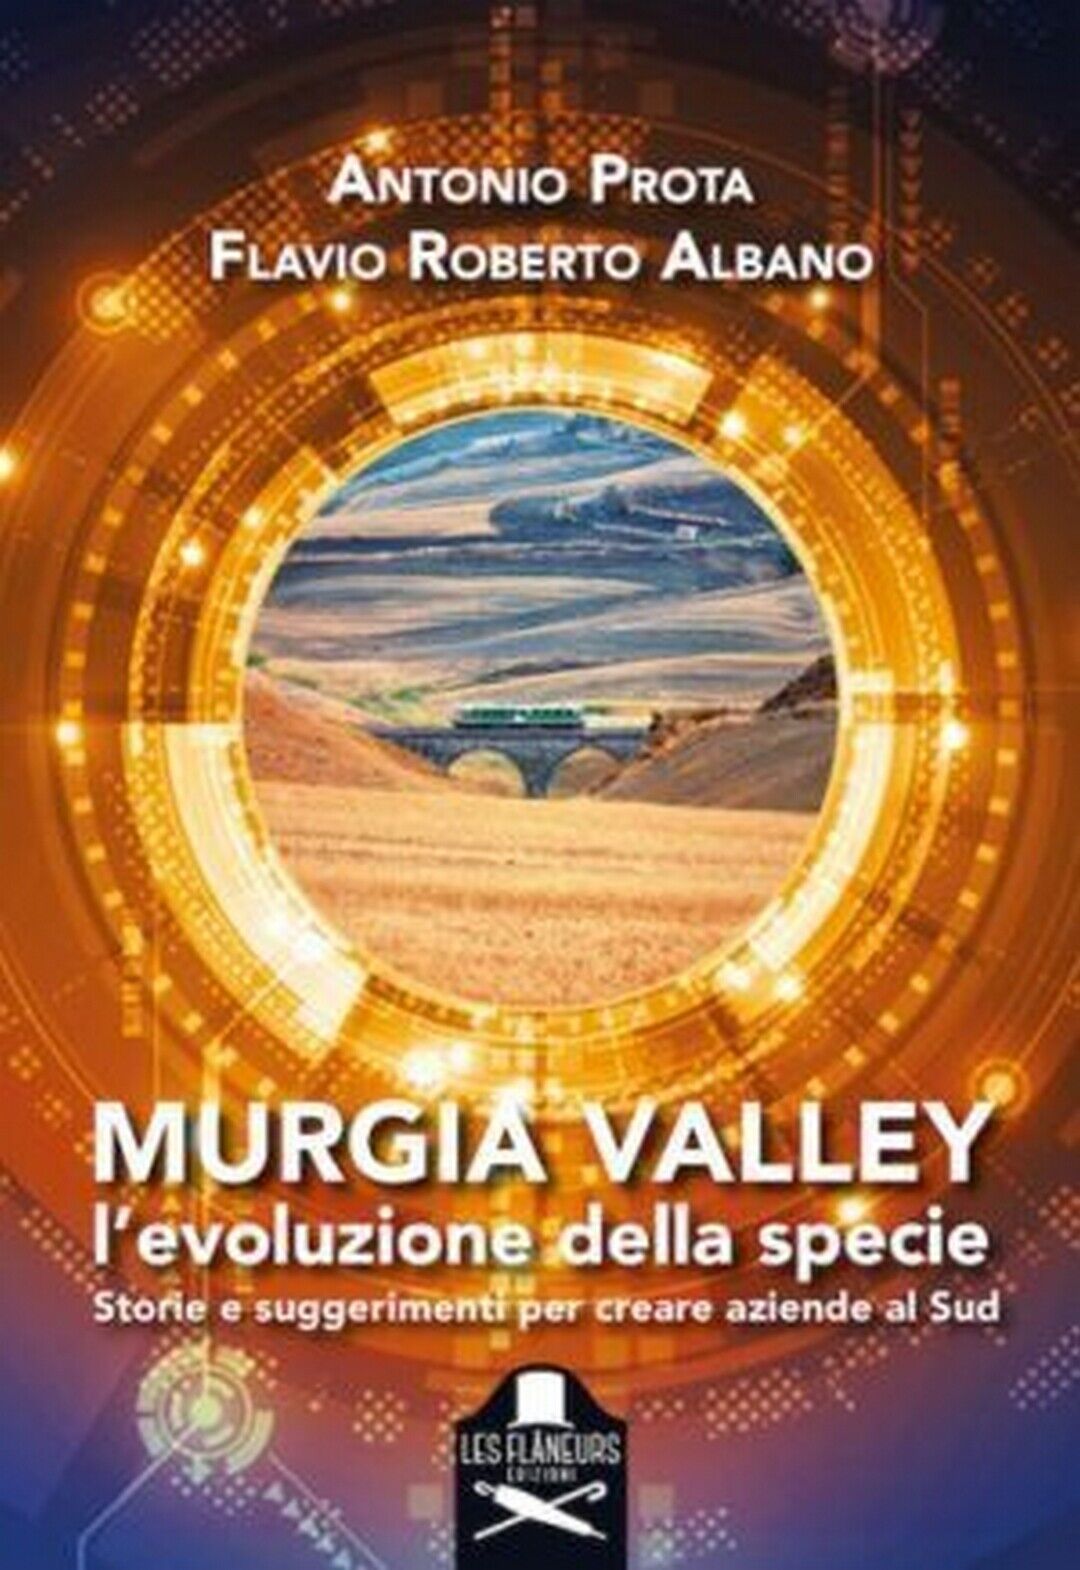 Murgia Valley  di Antonio Prota, Flavio Roberto Albano ,  Flaneurs libro usato